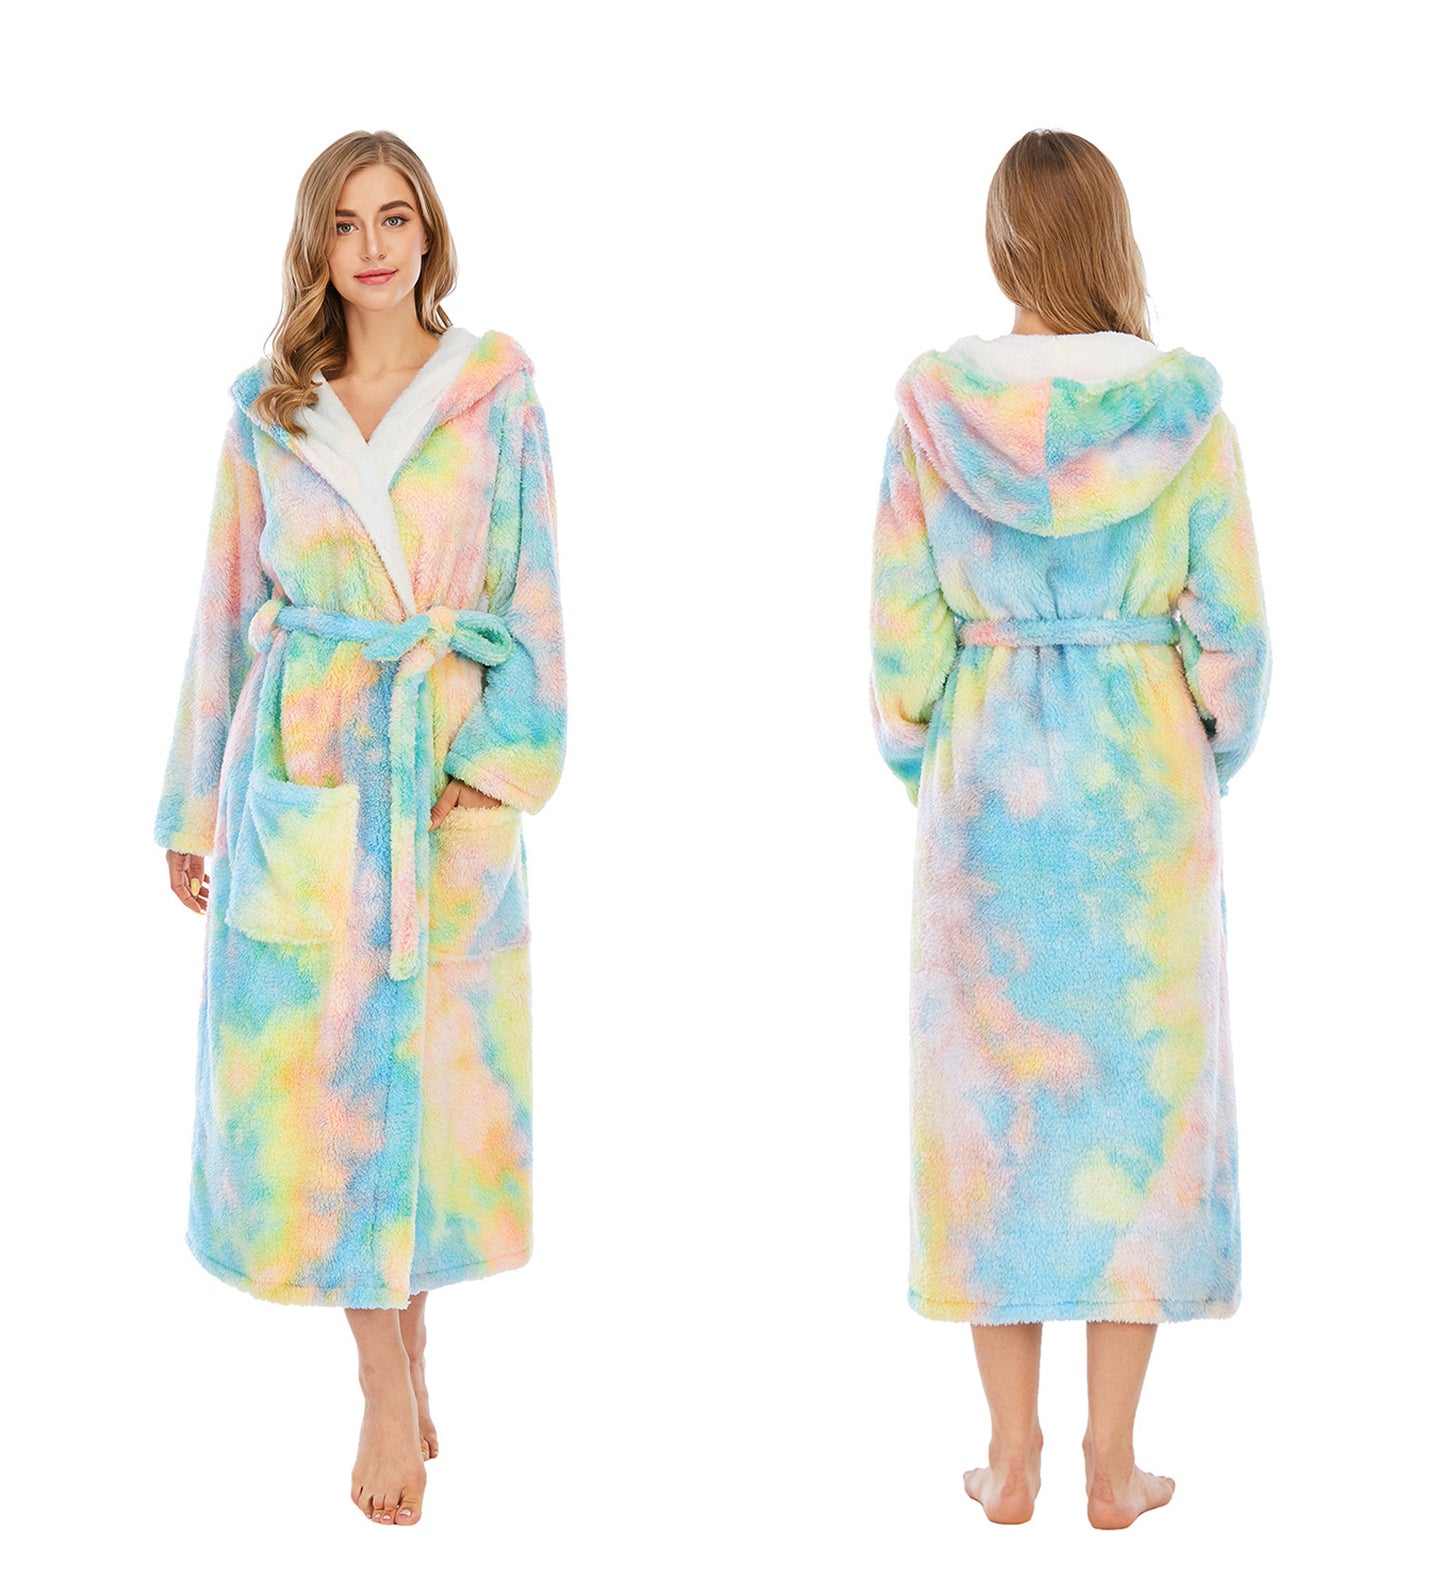 Women Dyed Fleece Casual Winter Hoodies Sleepwear with Pocket